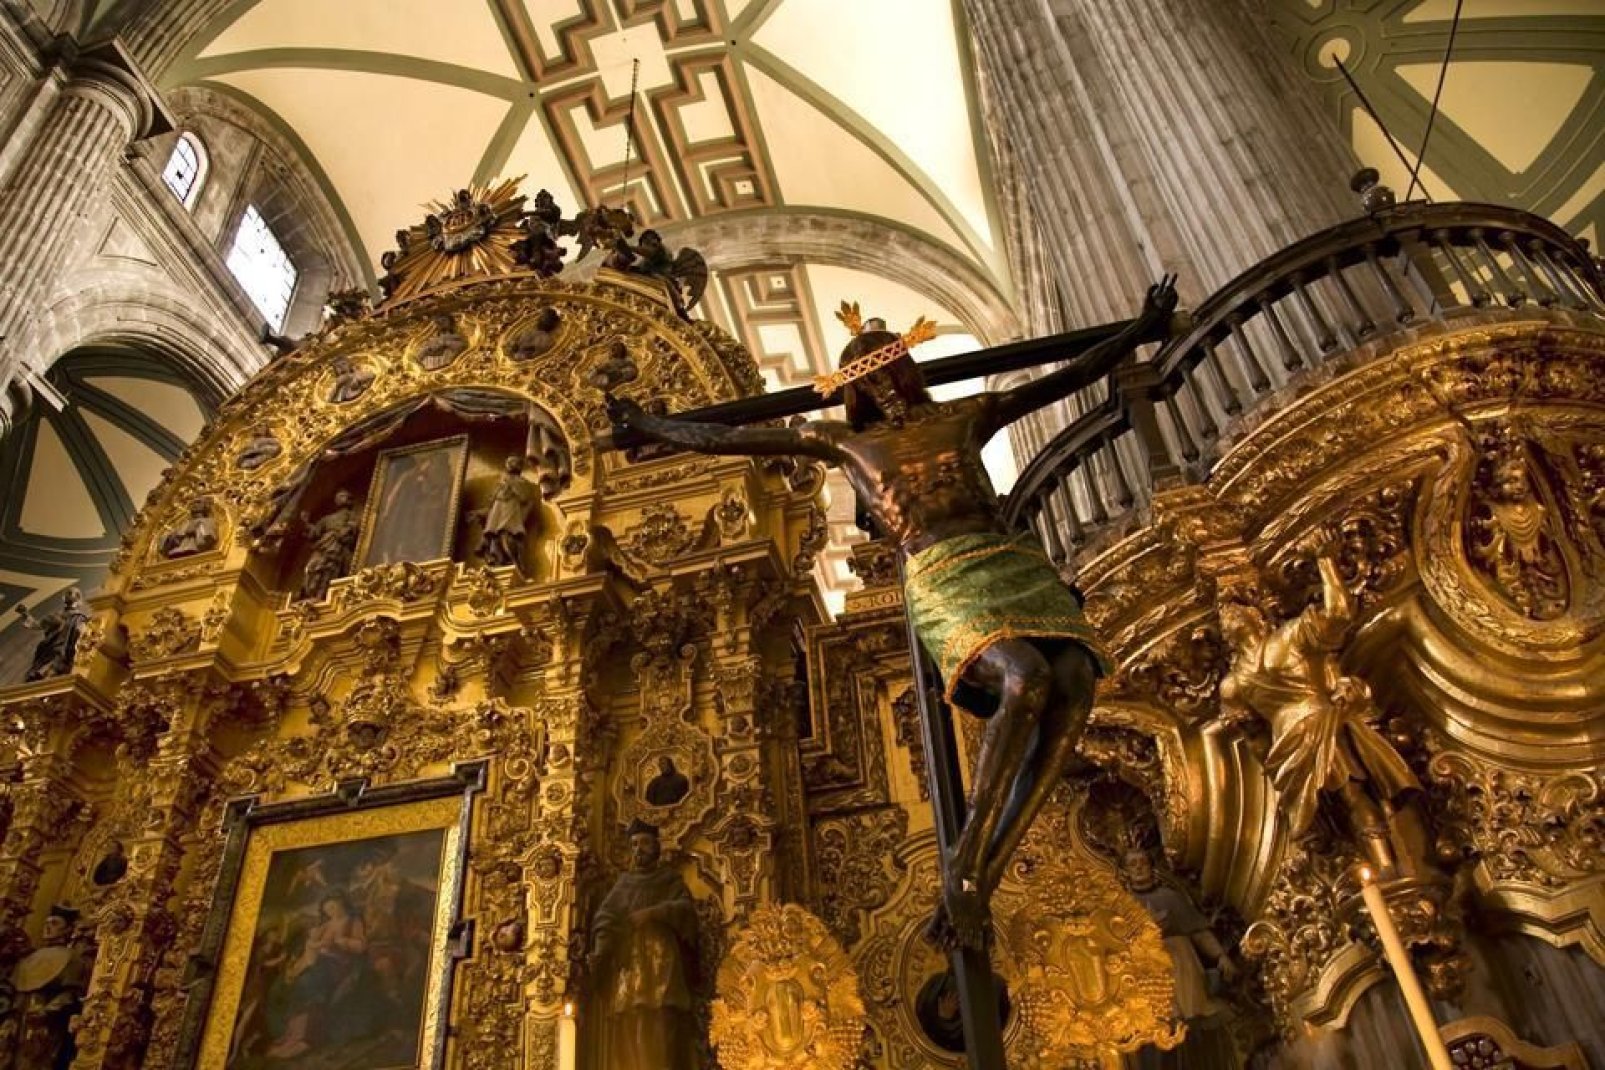 Bâtiment imposant de la ville, la Cathédrale possède une statue du Christ suspendu sur la Croix.